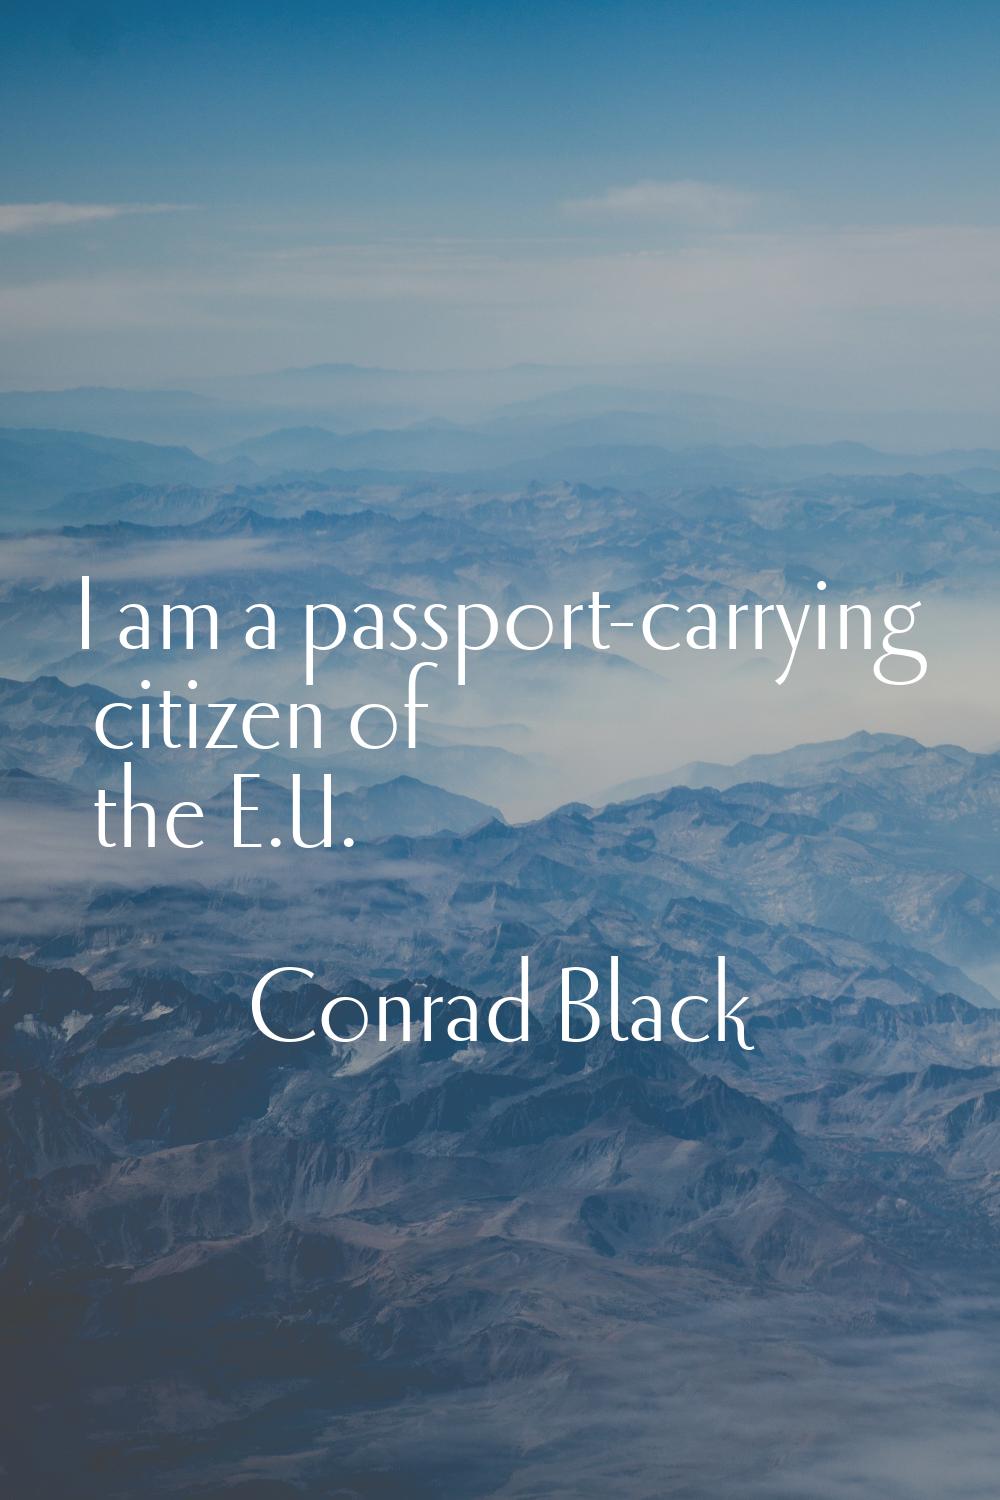 I am a passport-carrying citizen of the E.U.